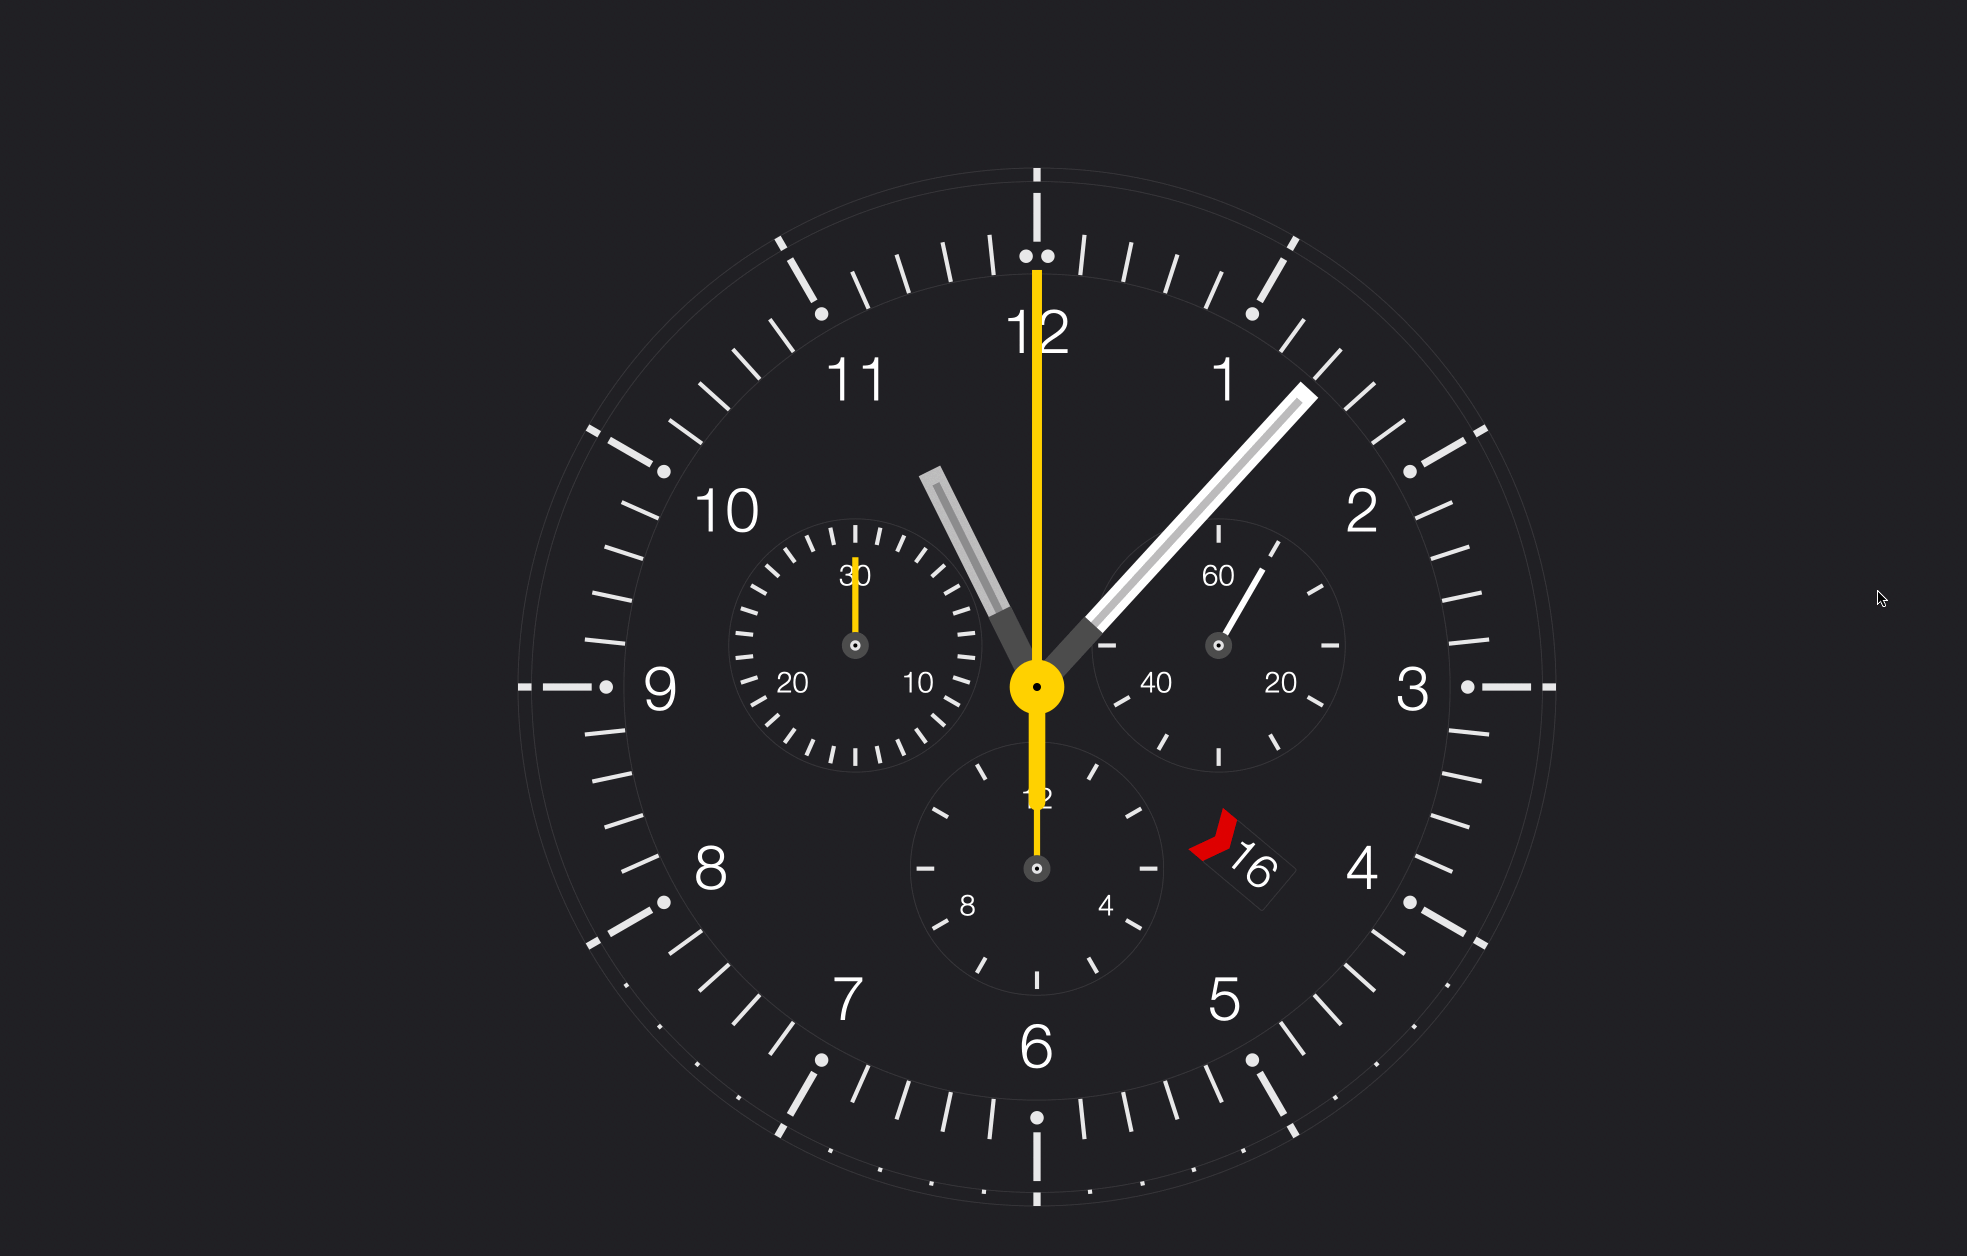 潮·科技 clock saver mac版上线了 , 模仿了braun watches的表盘